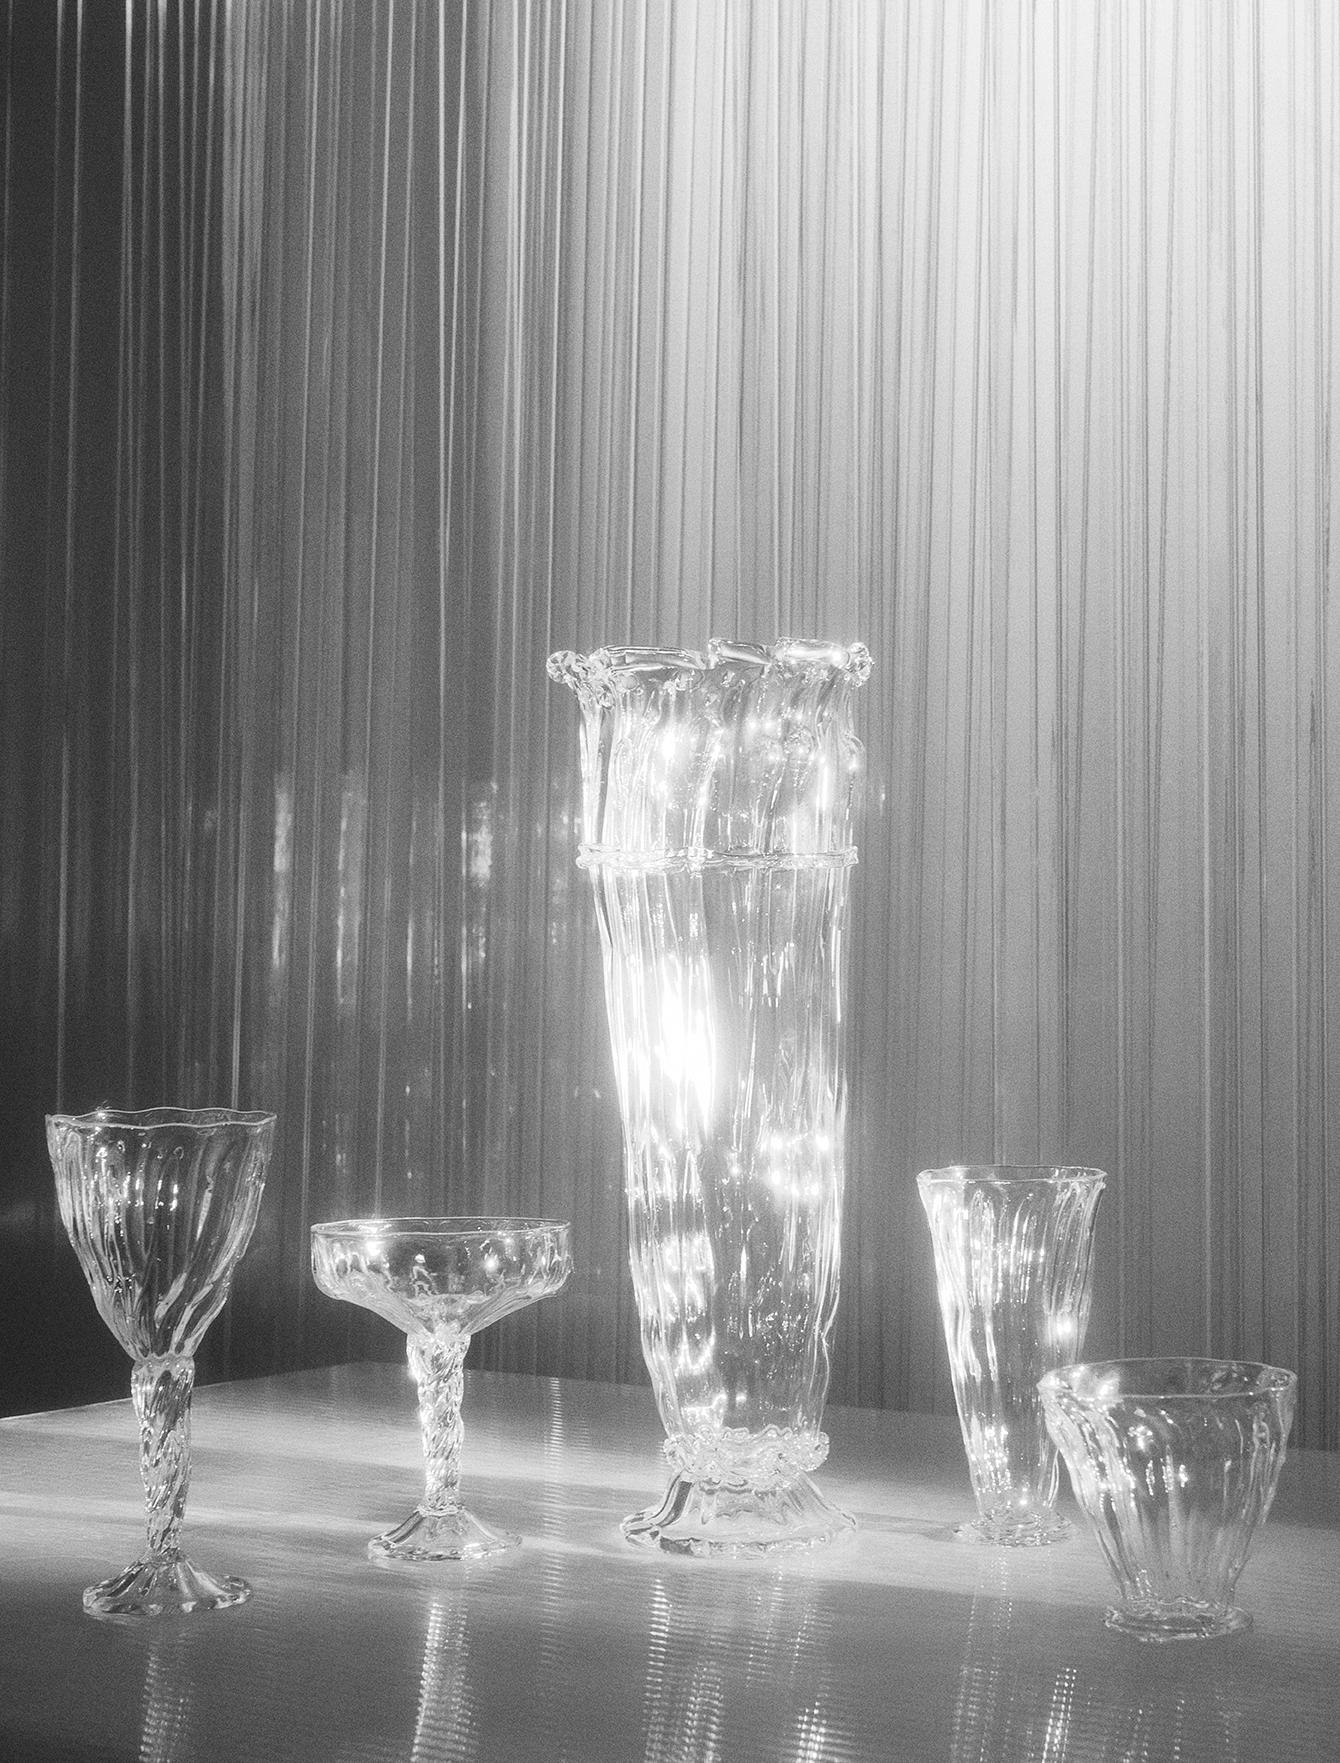 Tous les verres sont soufflés à la bouche par Alexander Kirkeby au Danemark.
Chaque pièce est donc unique et présente de légères différences de taille et de décoration. Fabriqué en verre de cristal sans plomb.

Alexander Kirkeby est souffleur de